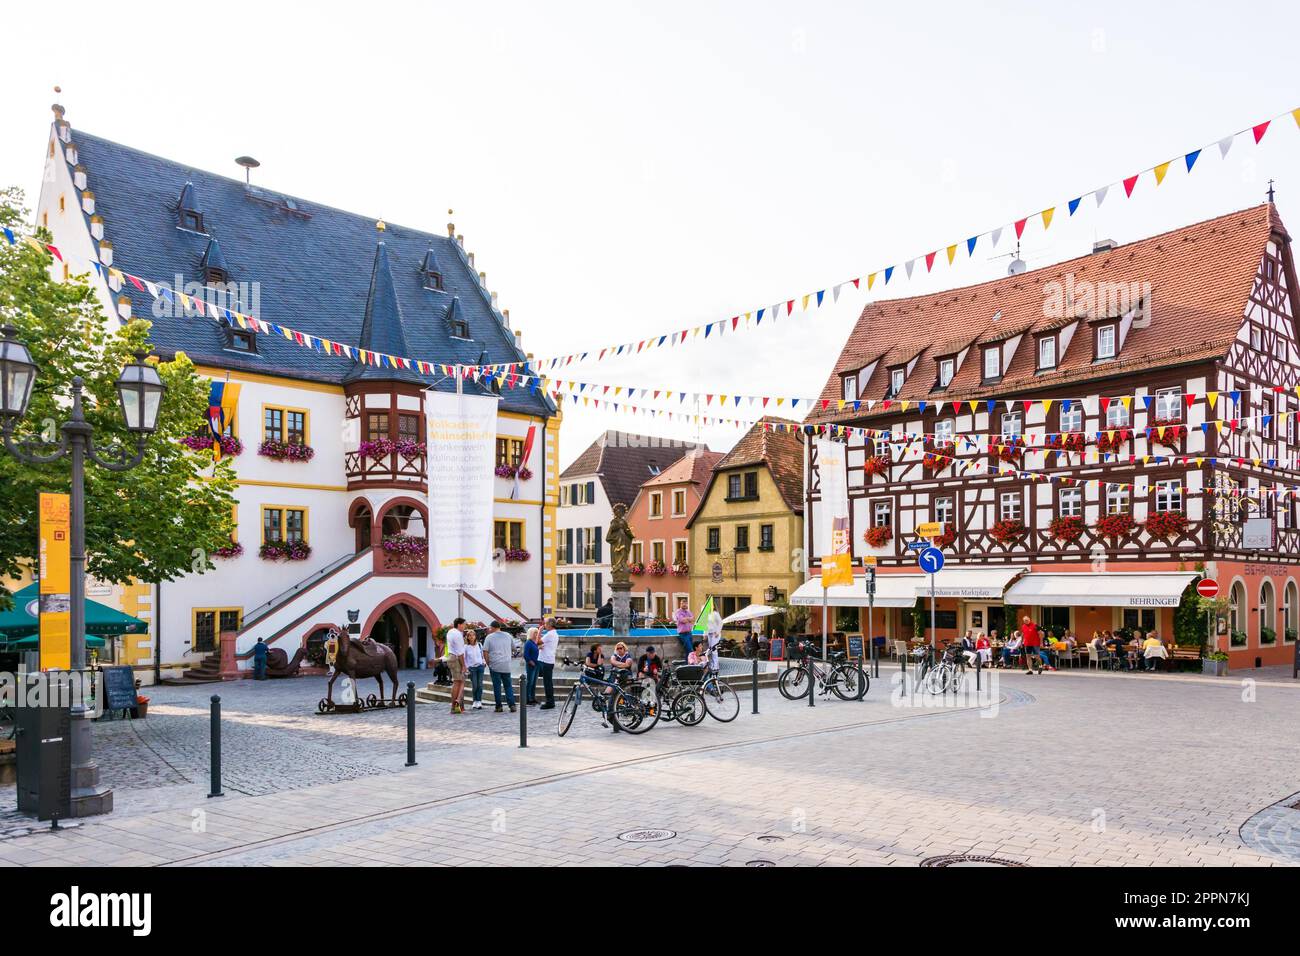 VOLKACH, Deutschland - 20. August: Touristen in der historischen Altstadt von Volkach, Deutschland Am 20. August 2017. Volkach ist bekannt für seine jährlichen Weinfest Stockfoto